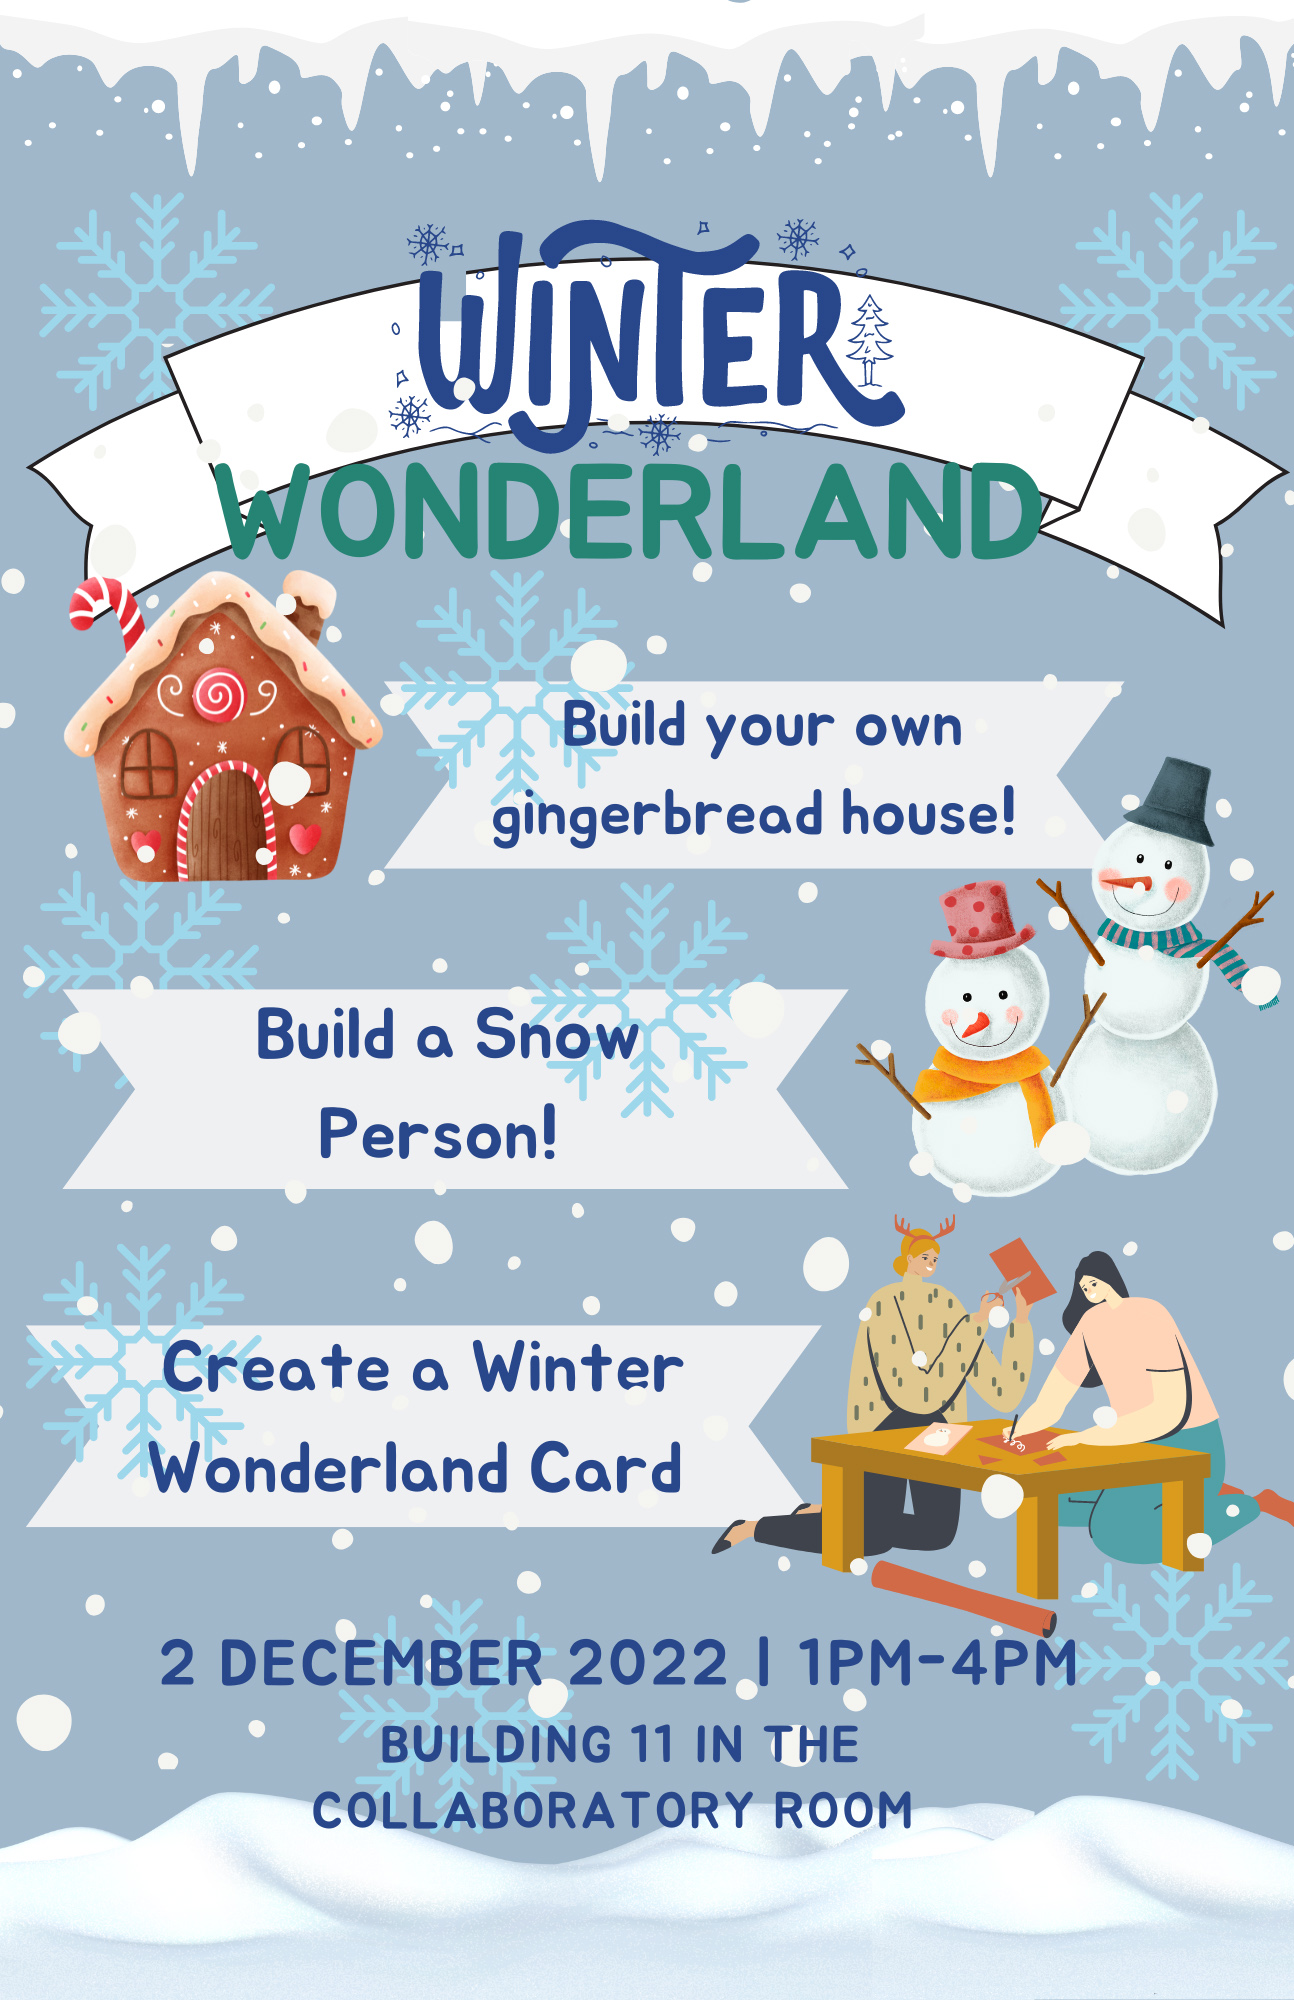 flyer for Witner Wonderland, craft activities 1-4 p.m. Dec. 2